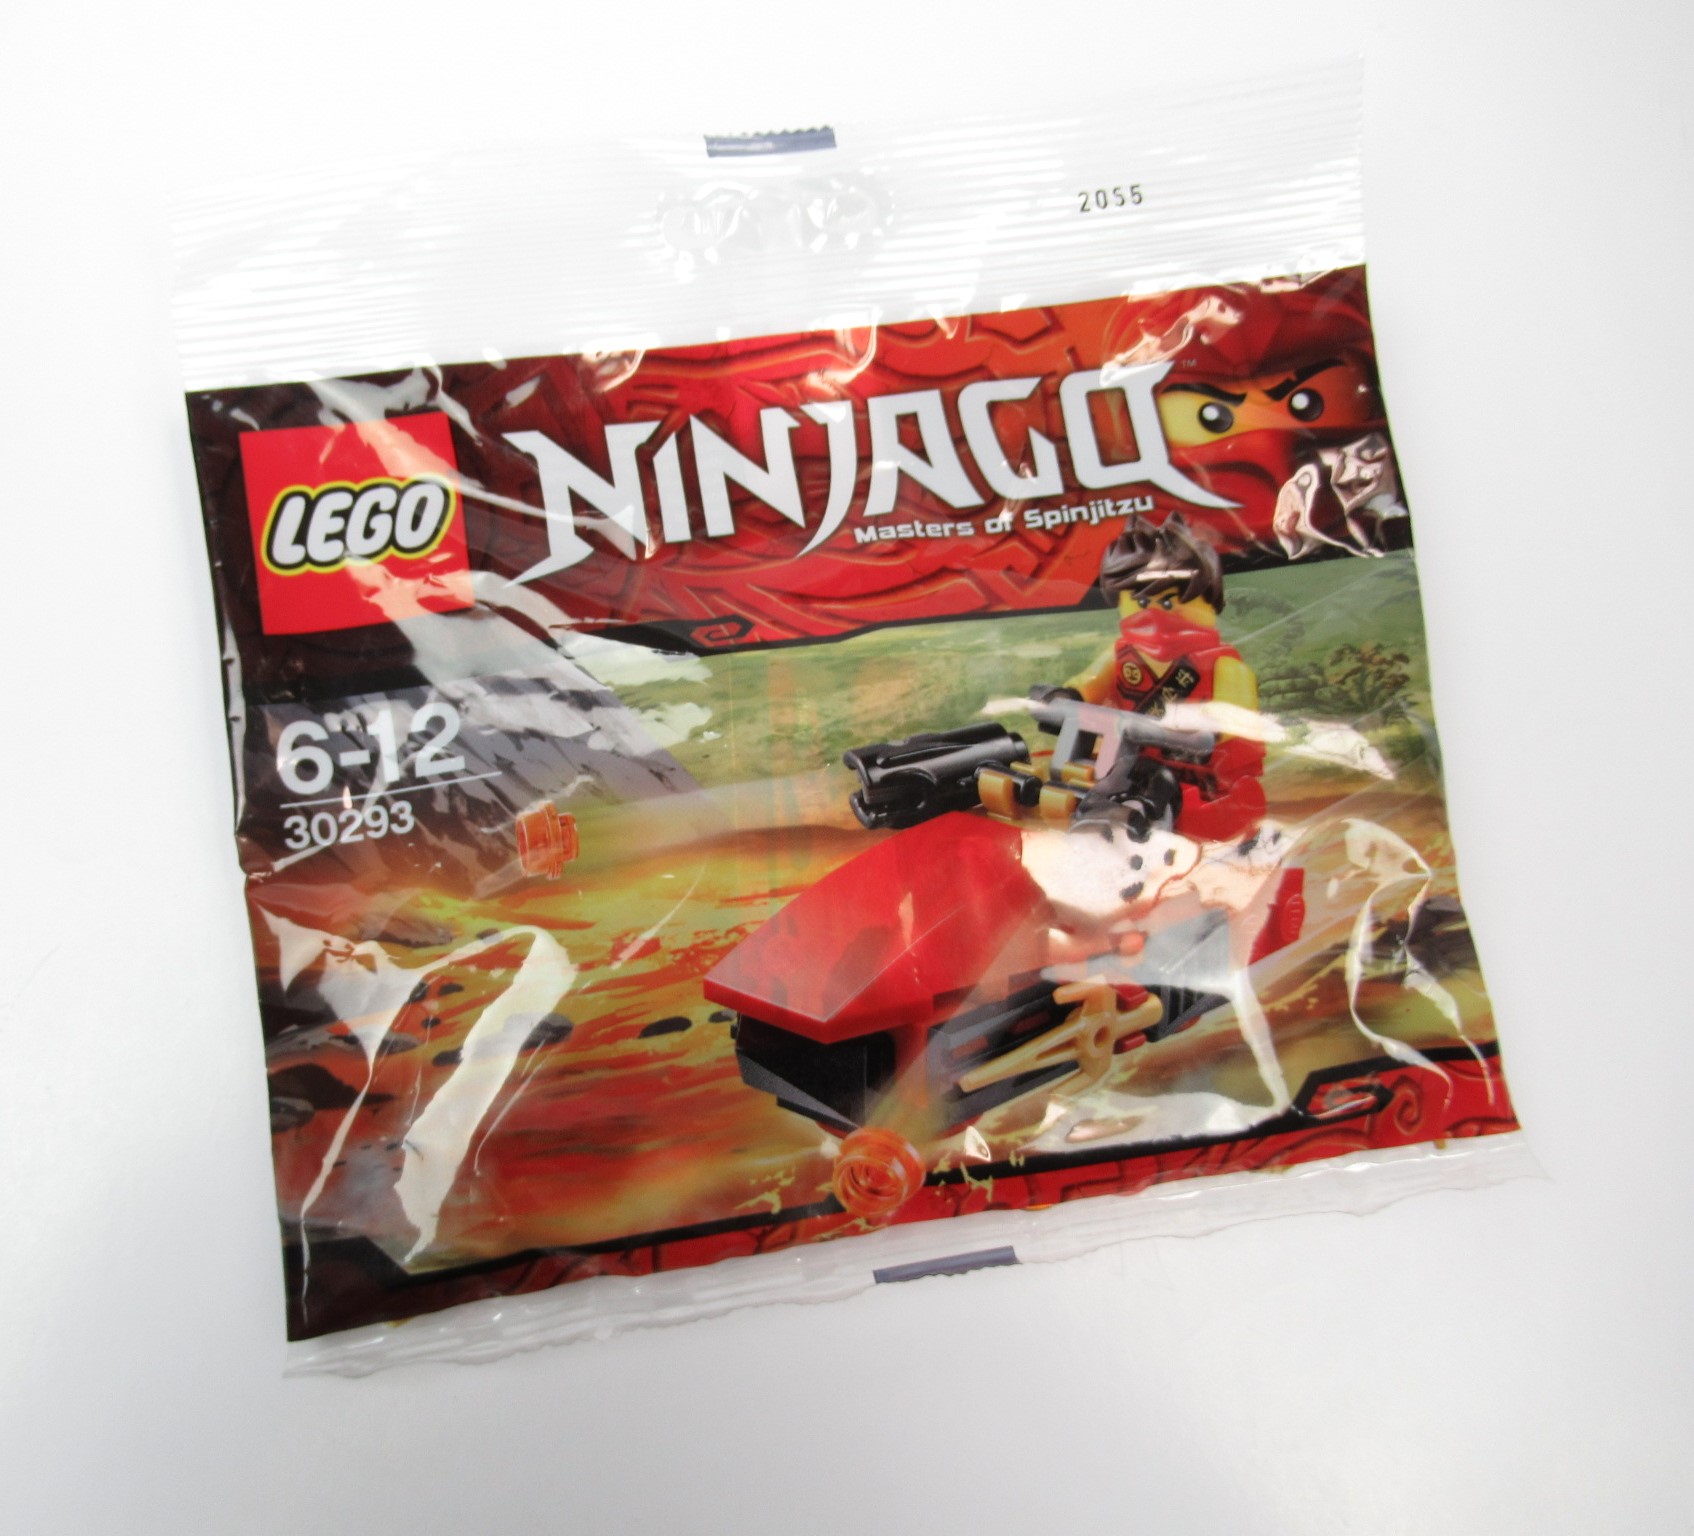 εικόνα του LEGO Ninjago 30293: Kai Drifter Polybag